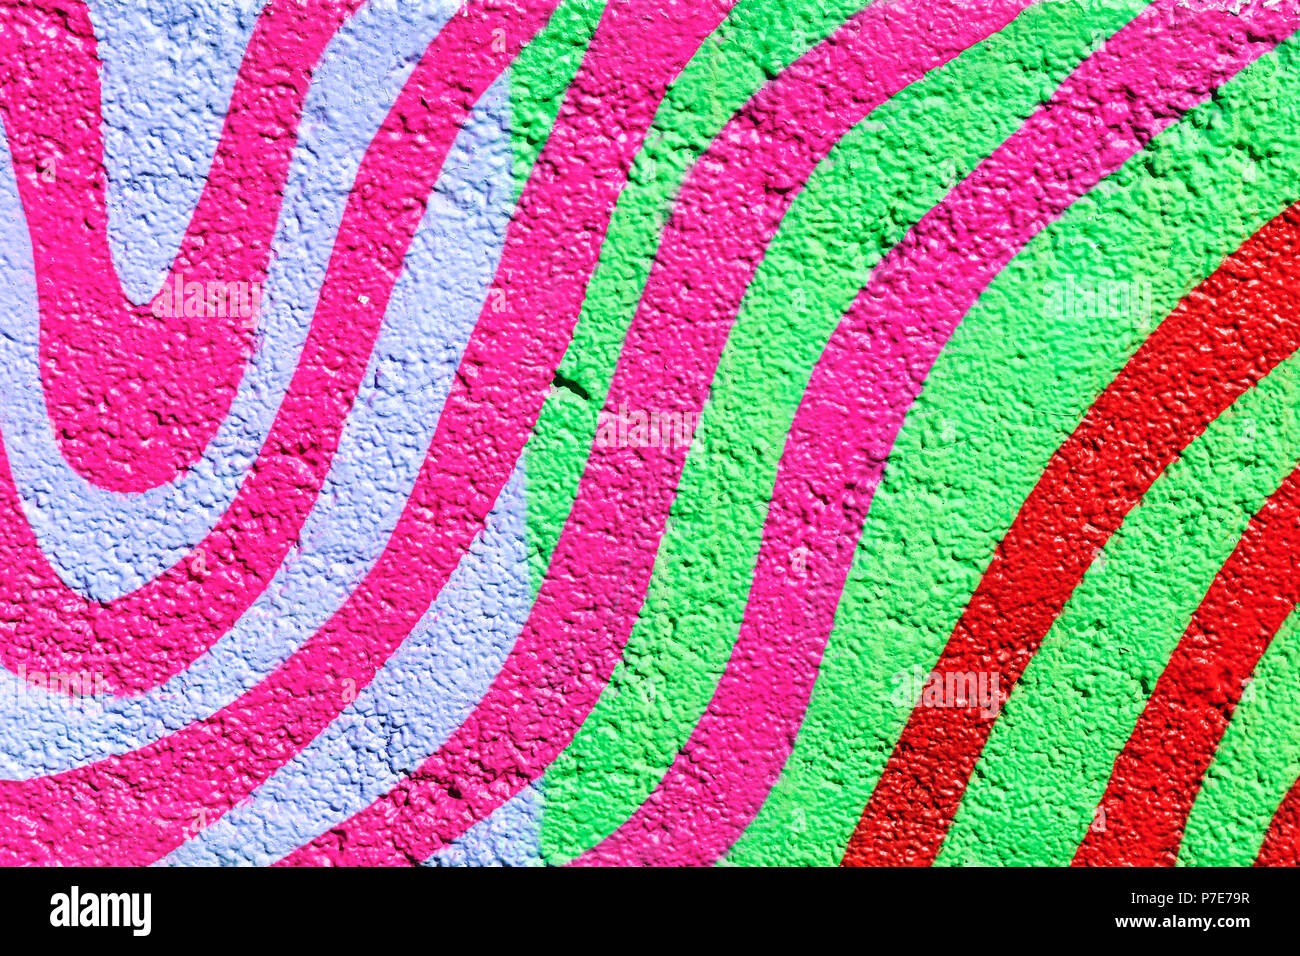 MINSK, BELARUS - MART 28, 2018 : mur peint de couleurs vives street art culture street. Banque D'Images